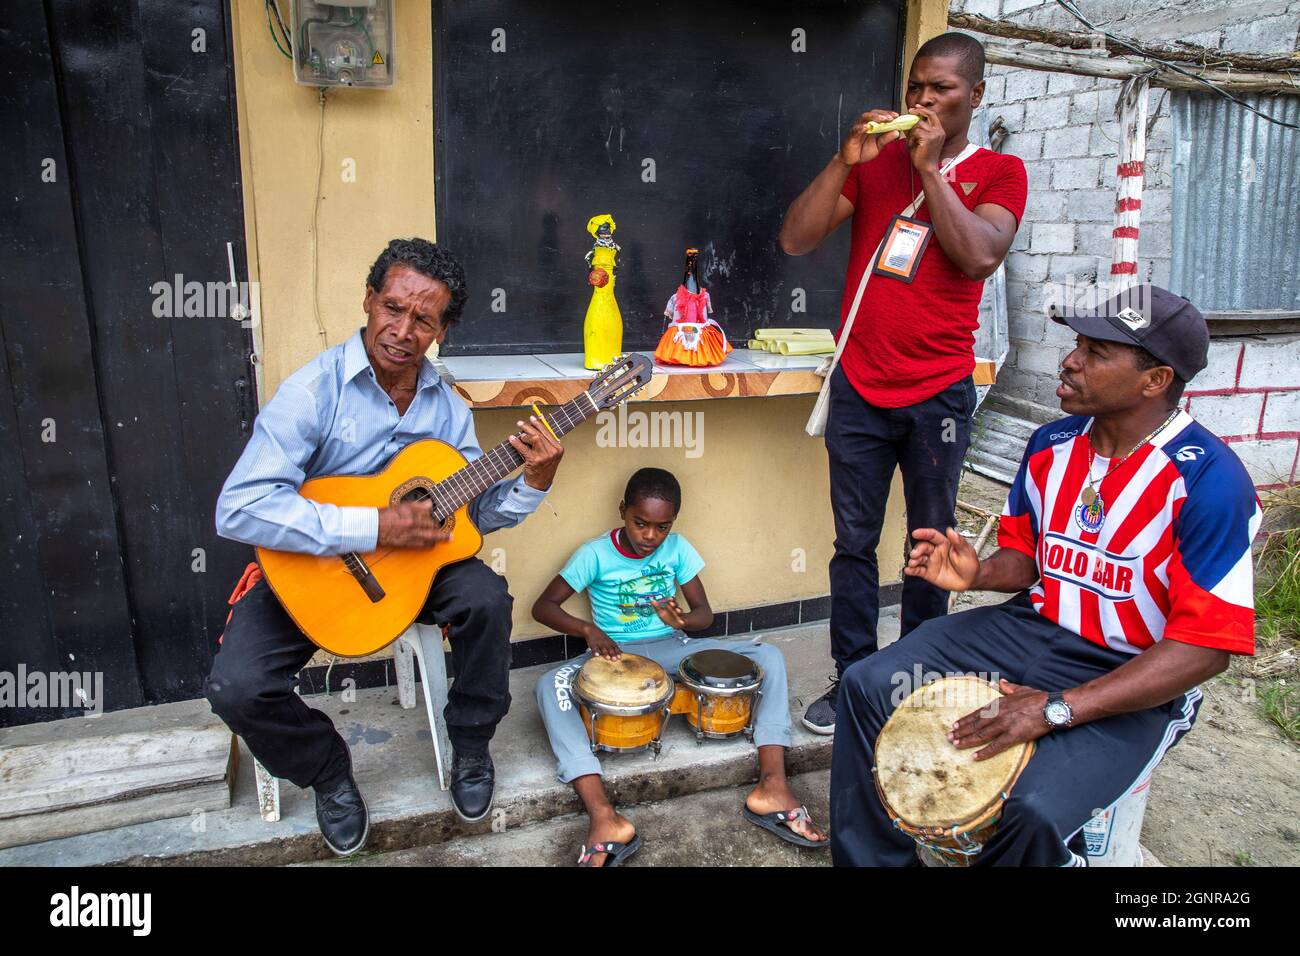 Afro-Ecuadorian group playing music in Valle del Chota, Ecuador Stock Photo